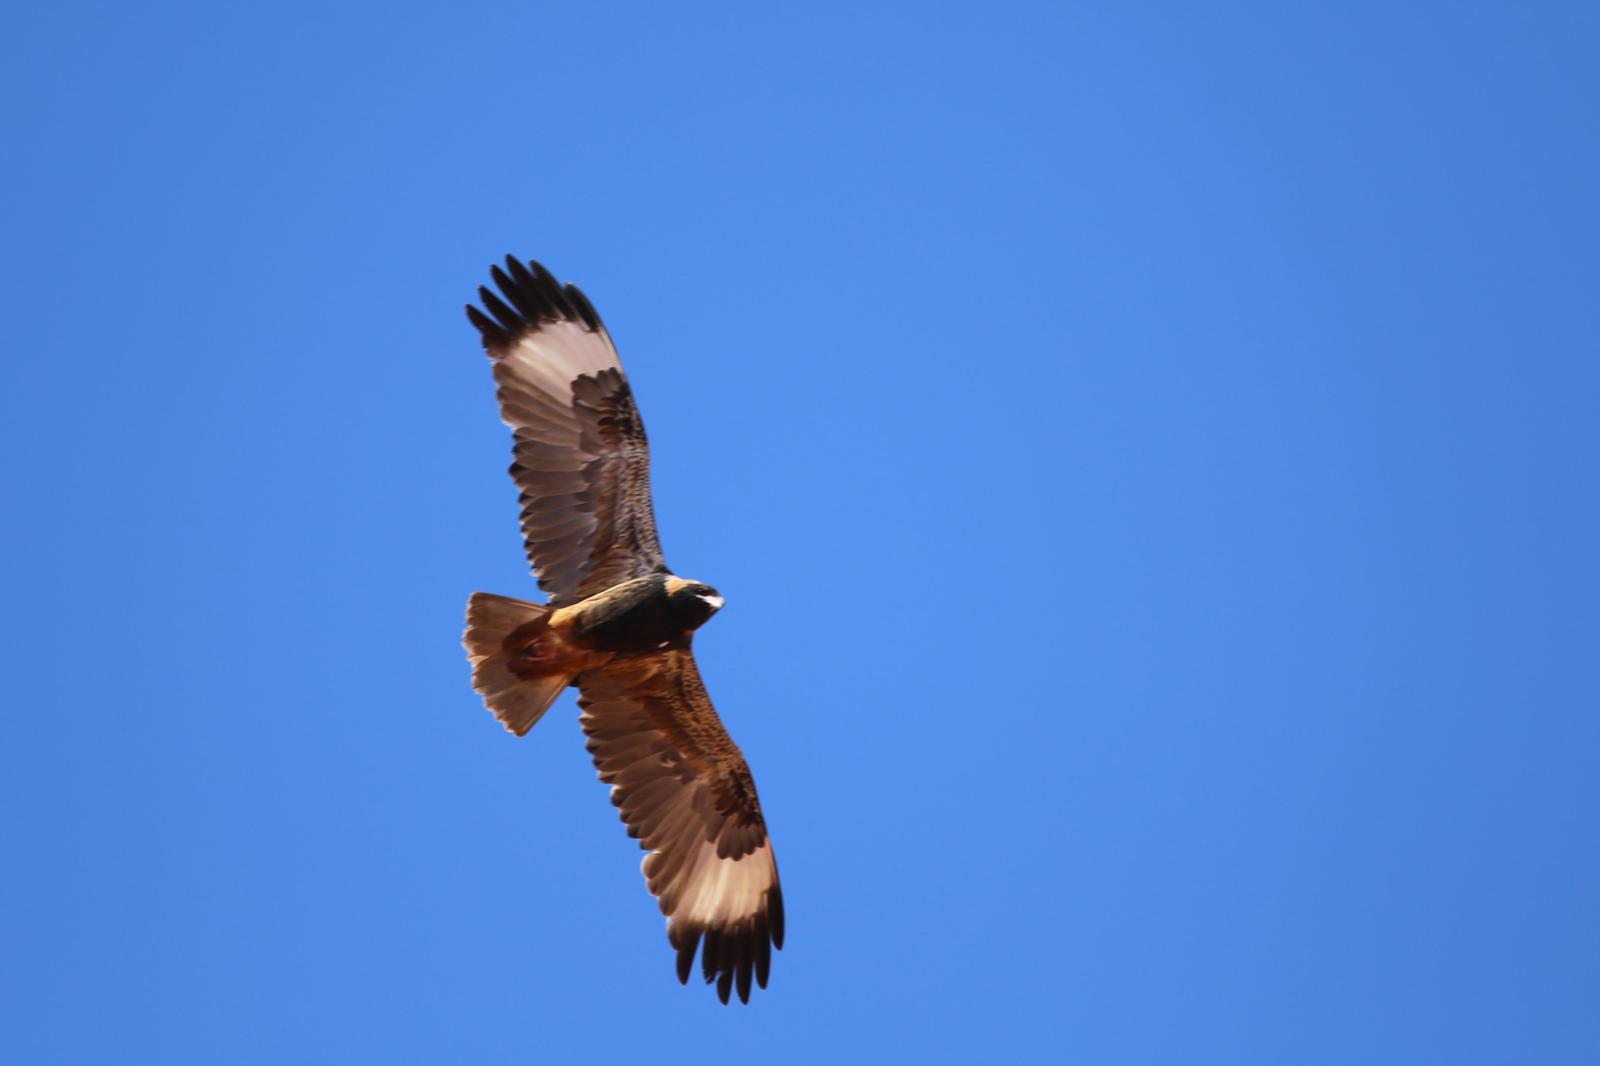 Black-breasted Kite Photo by Rohan van Twest